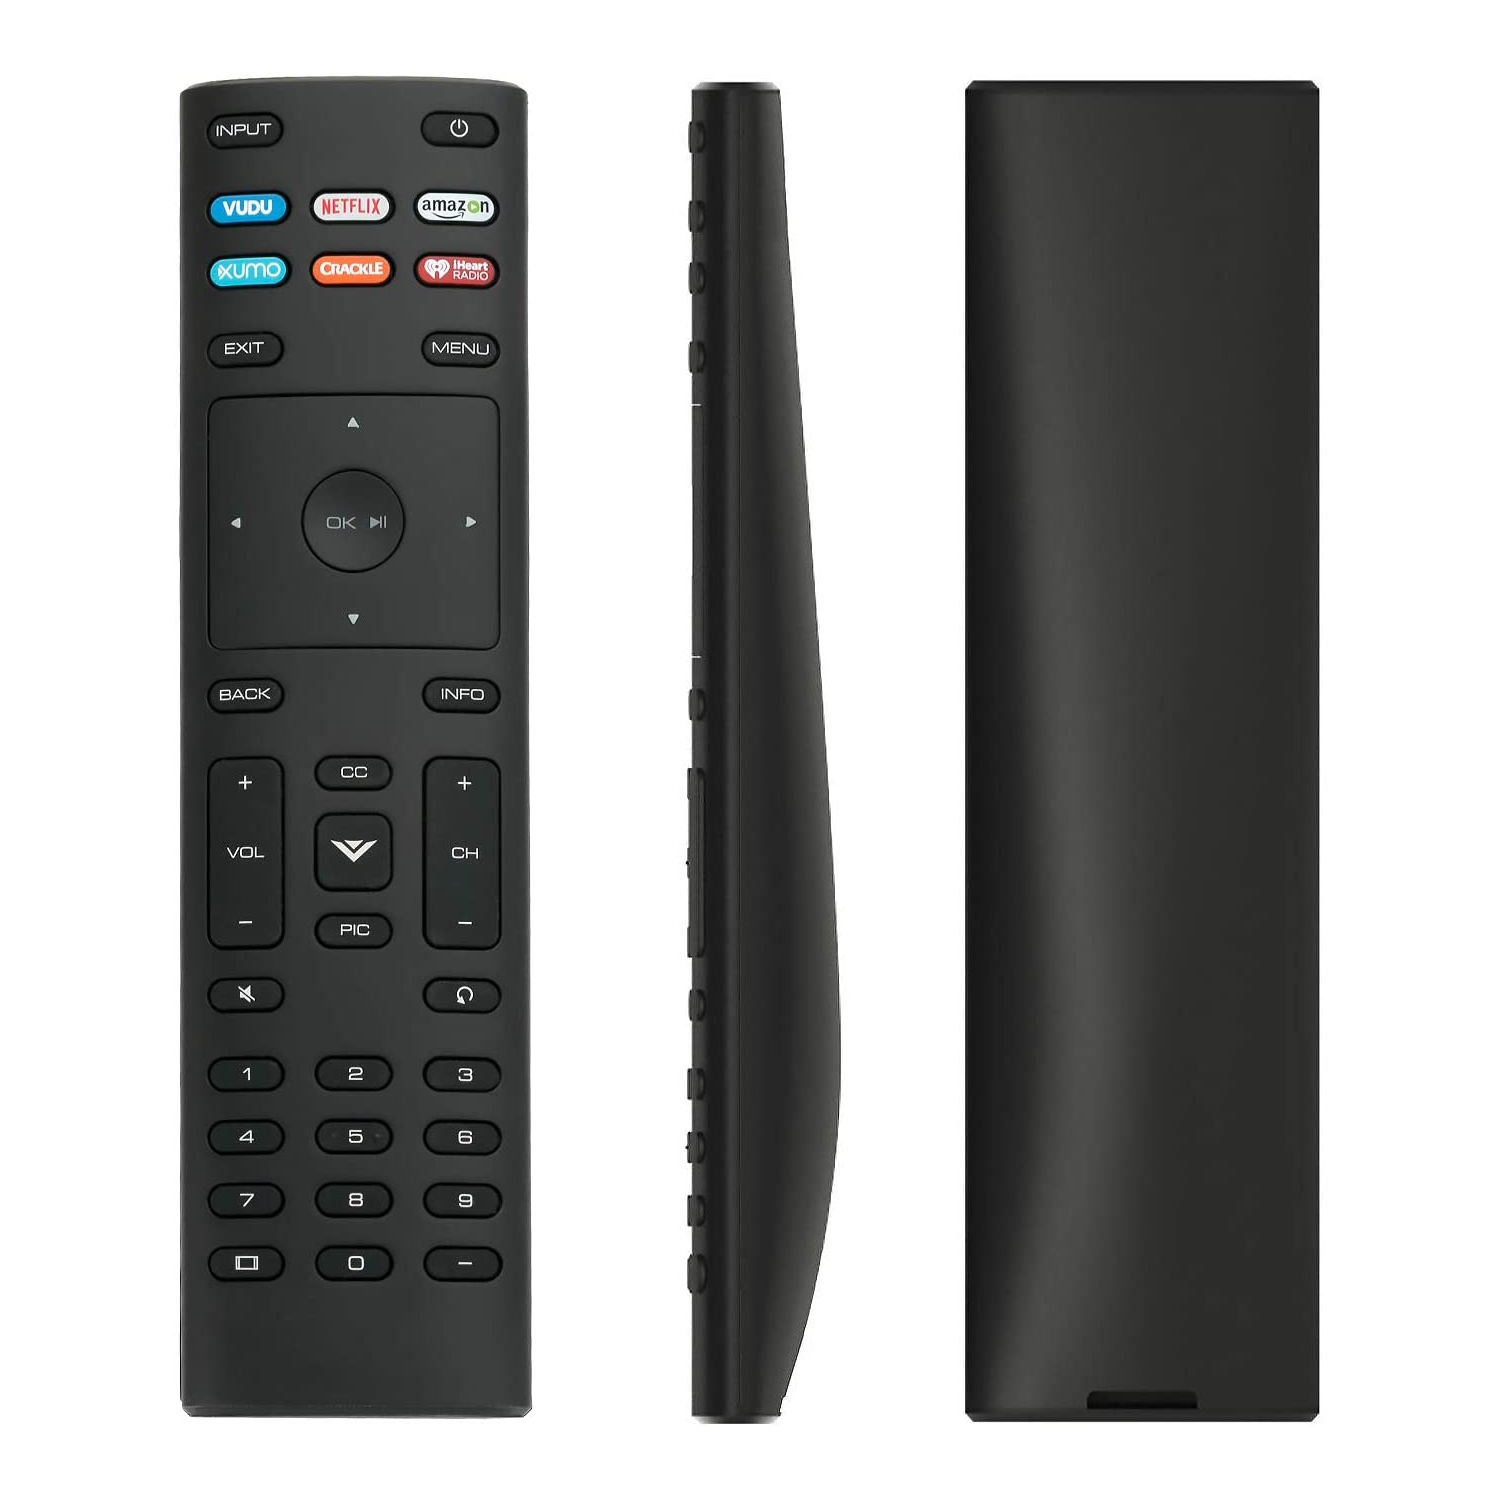 New XRT136 Remote Control fit for VIZIO TV 2017 2018 TV Model D43fx-F4 D65x-G4 D43-F1 D55-F2 D60-F3 D65-F1 D70-F3